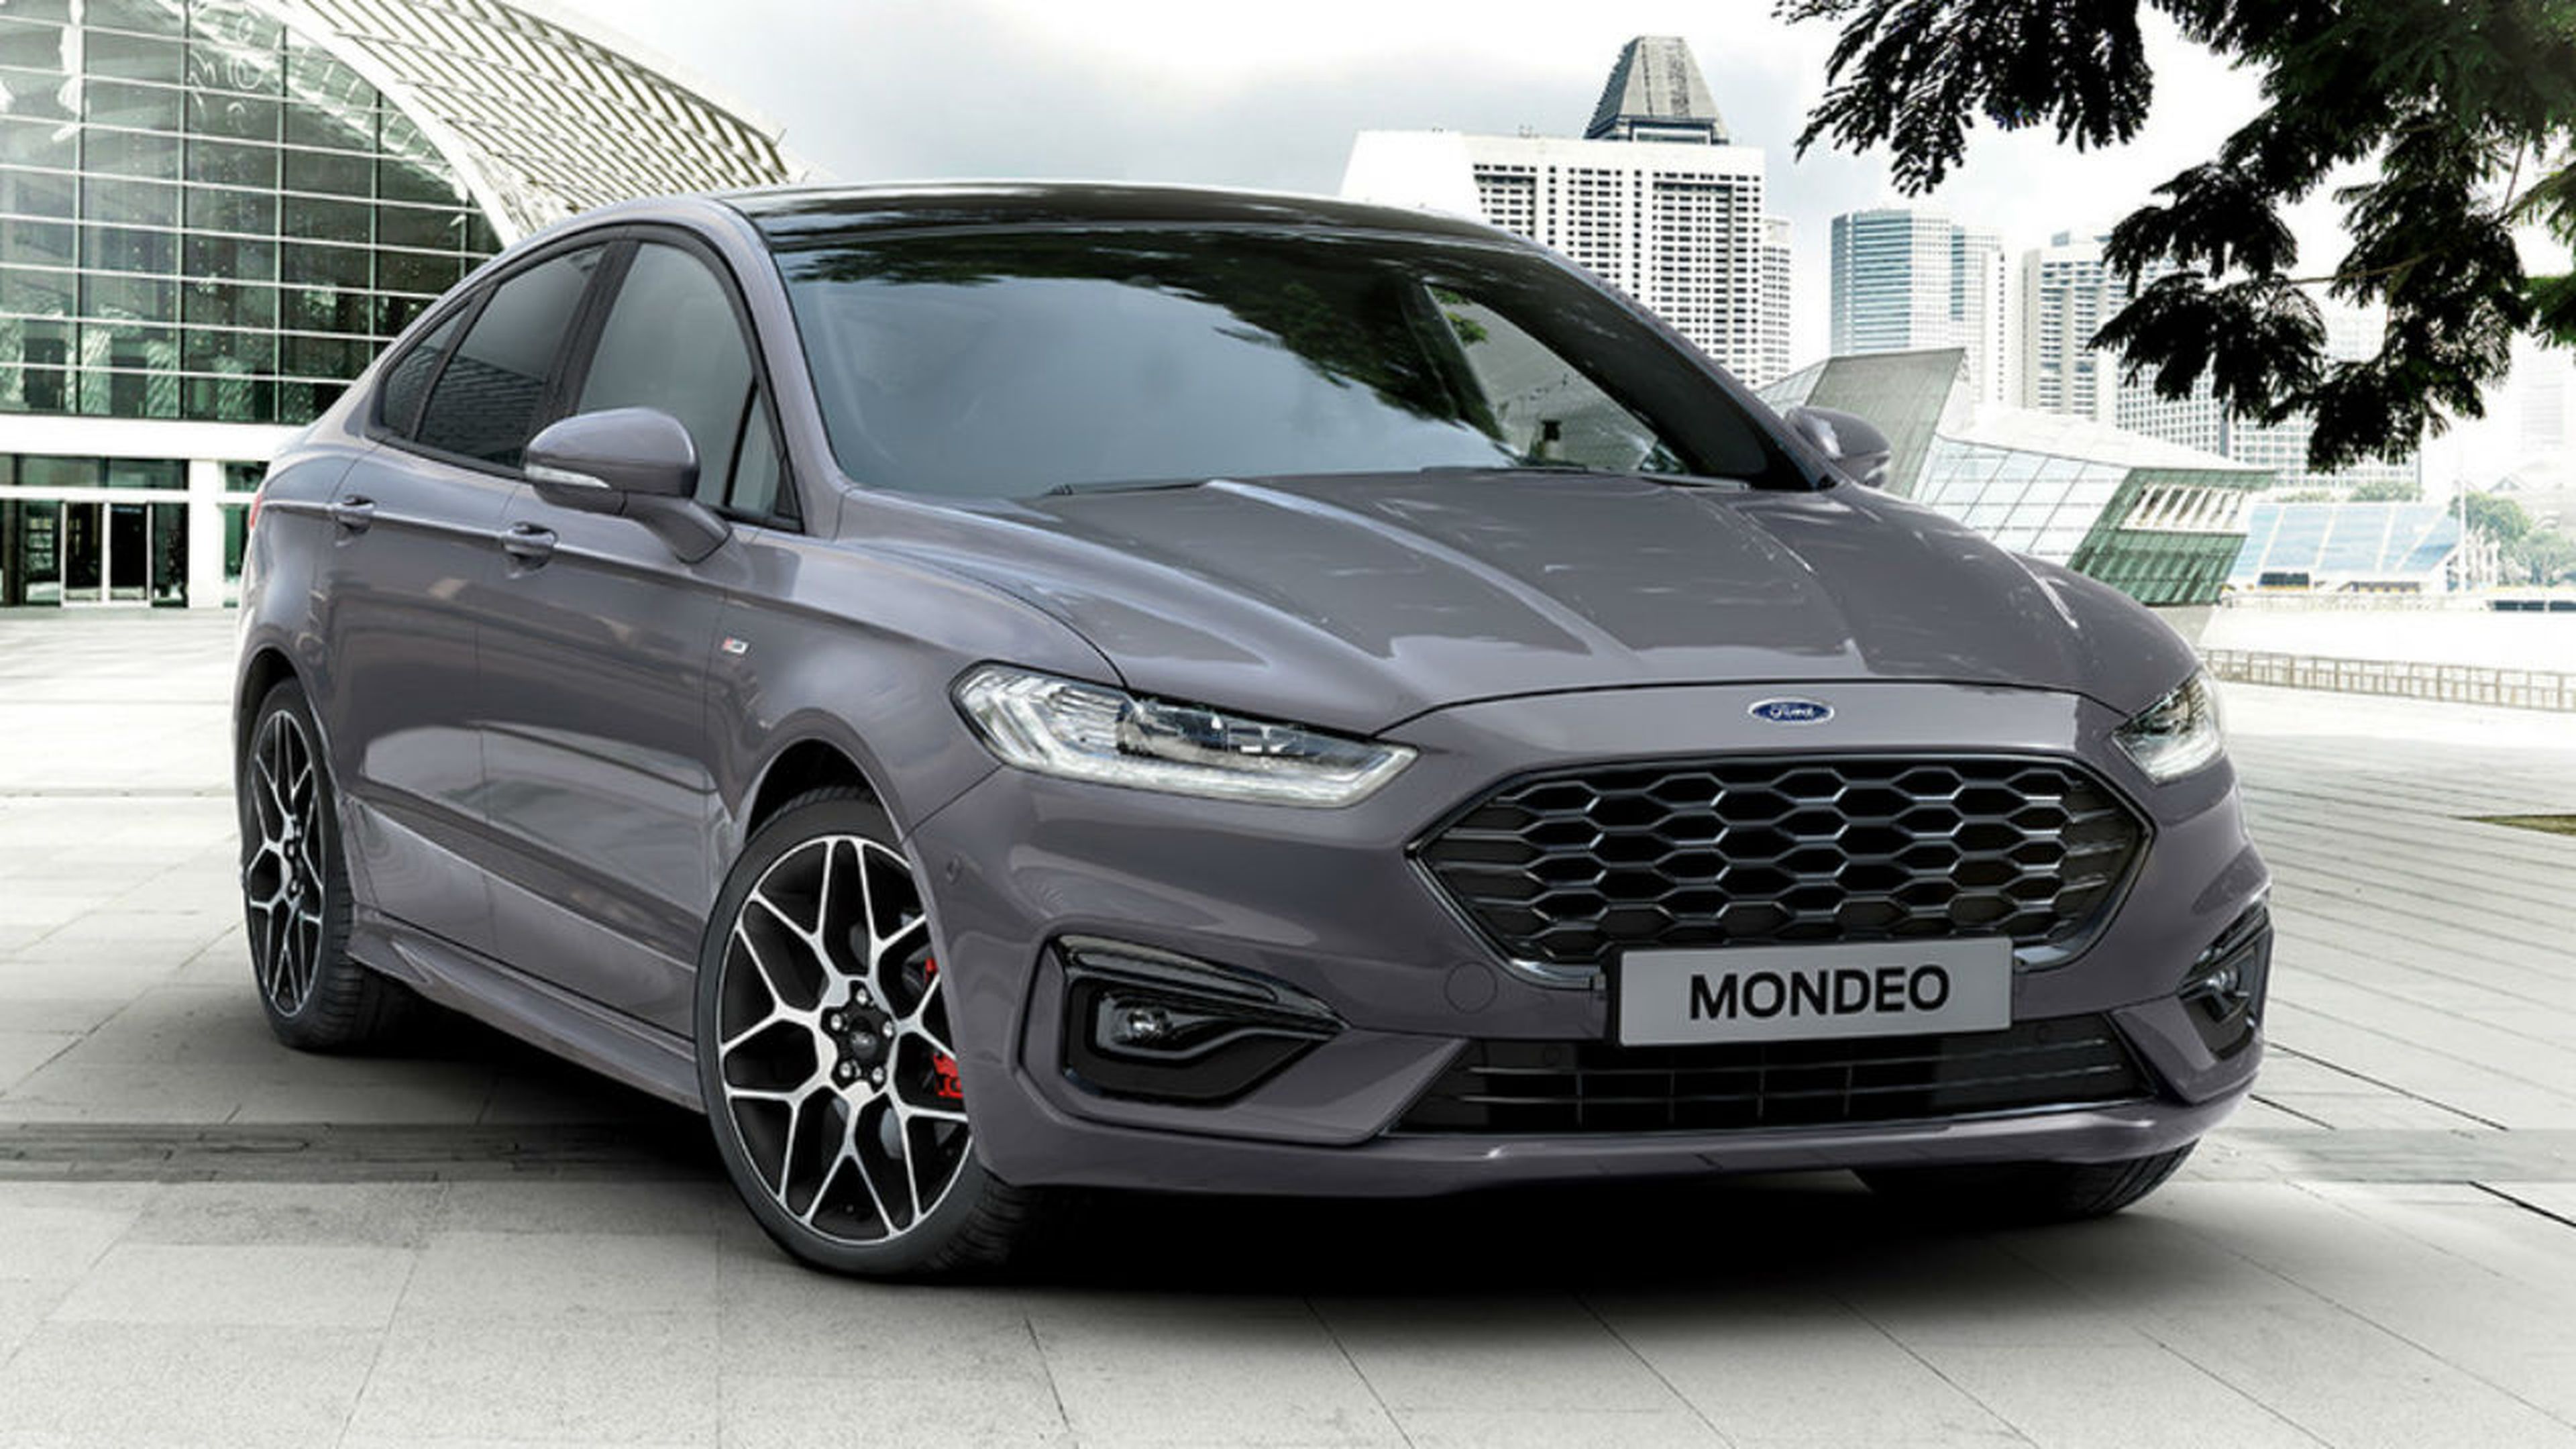 La producción del Ford Mondeo finalizará oficialmente en 2022